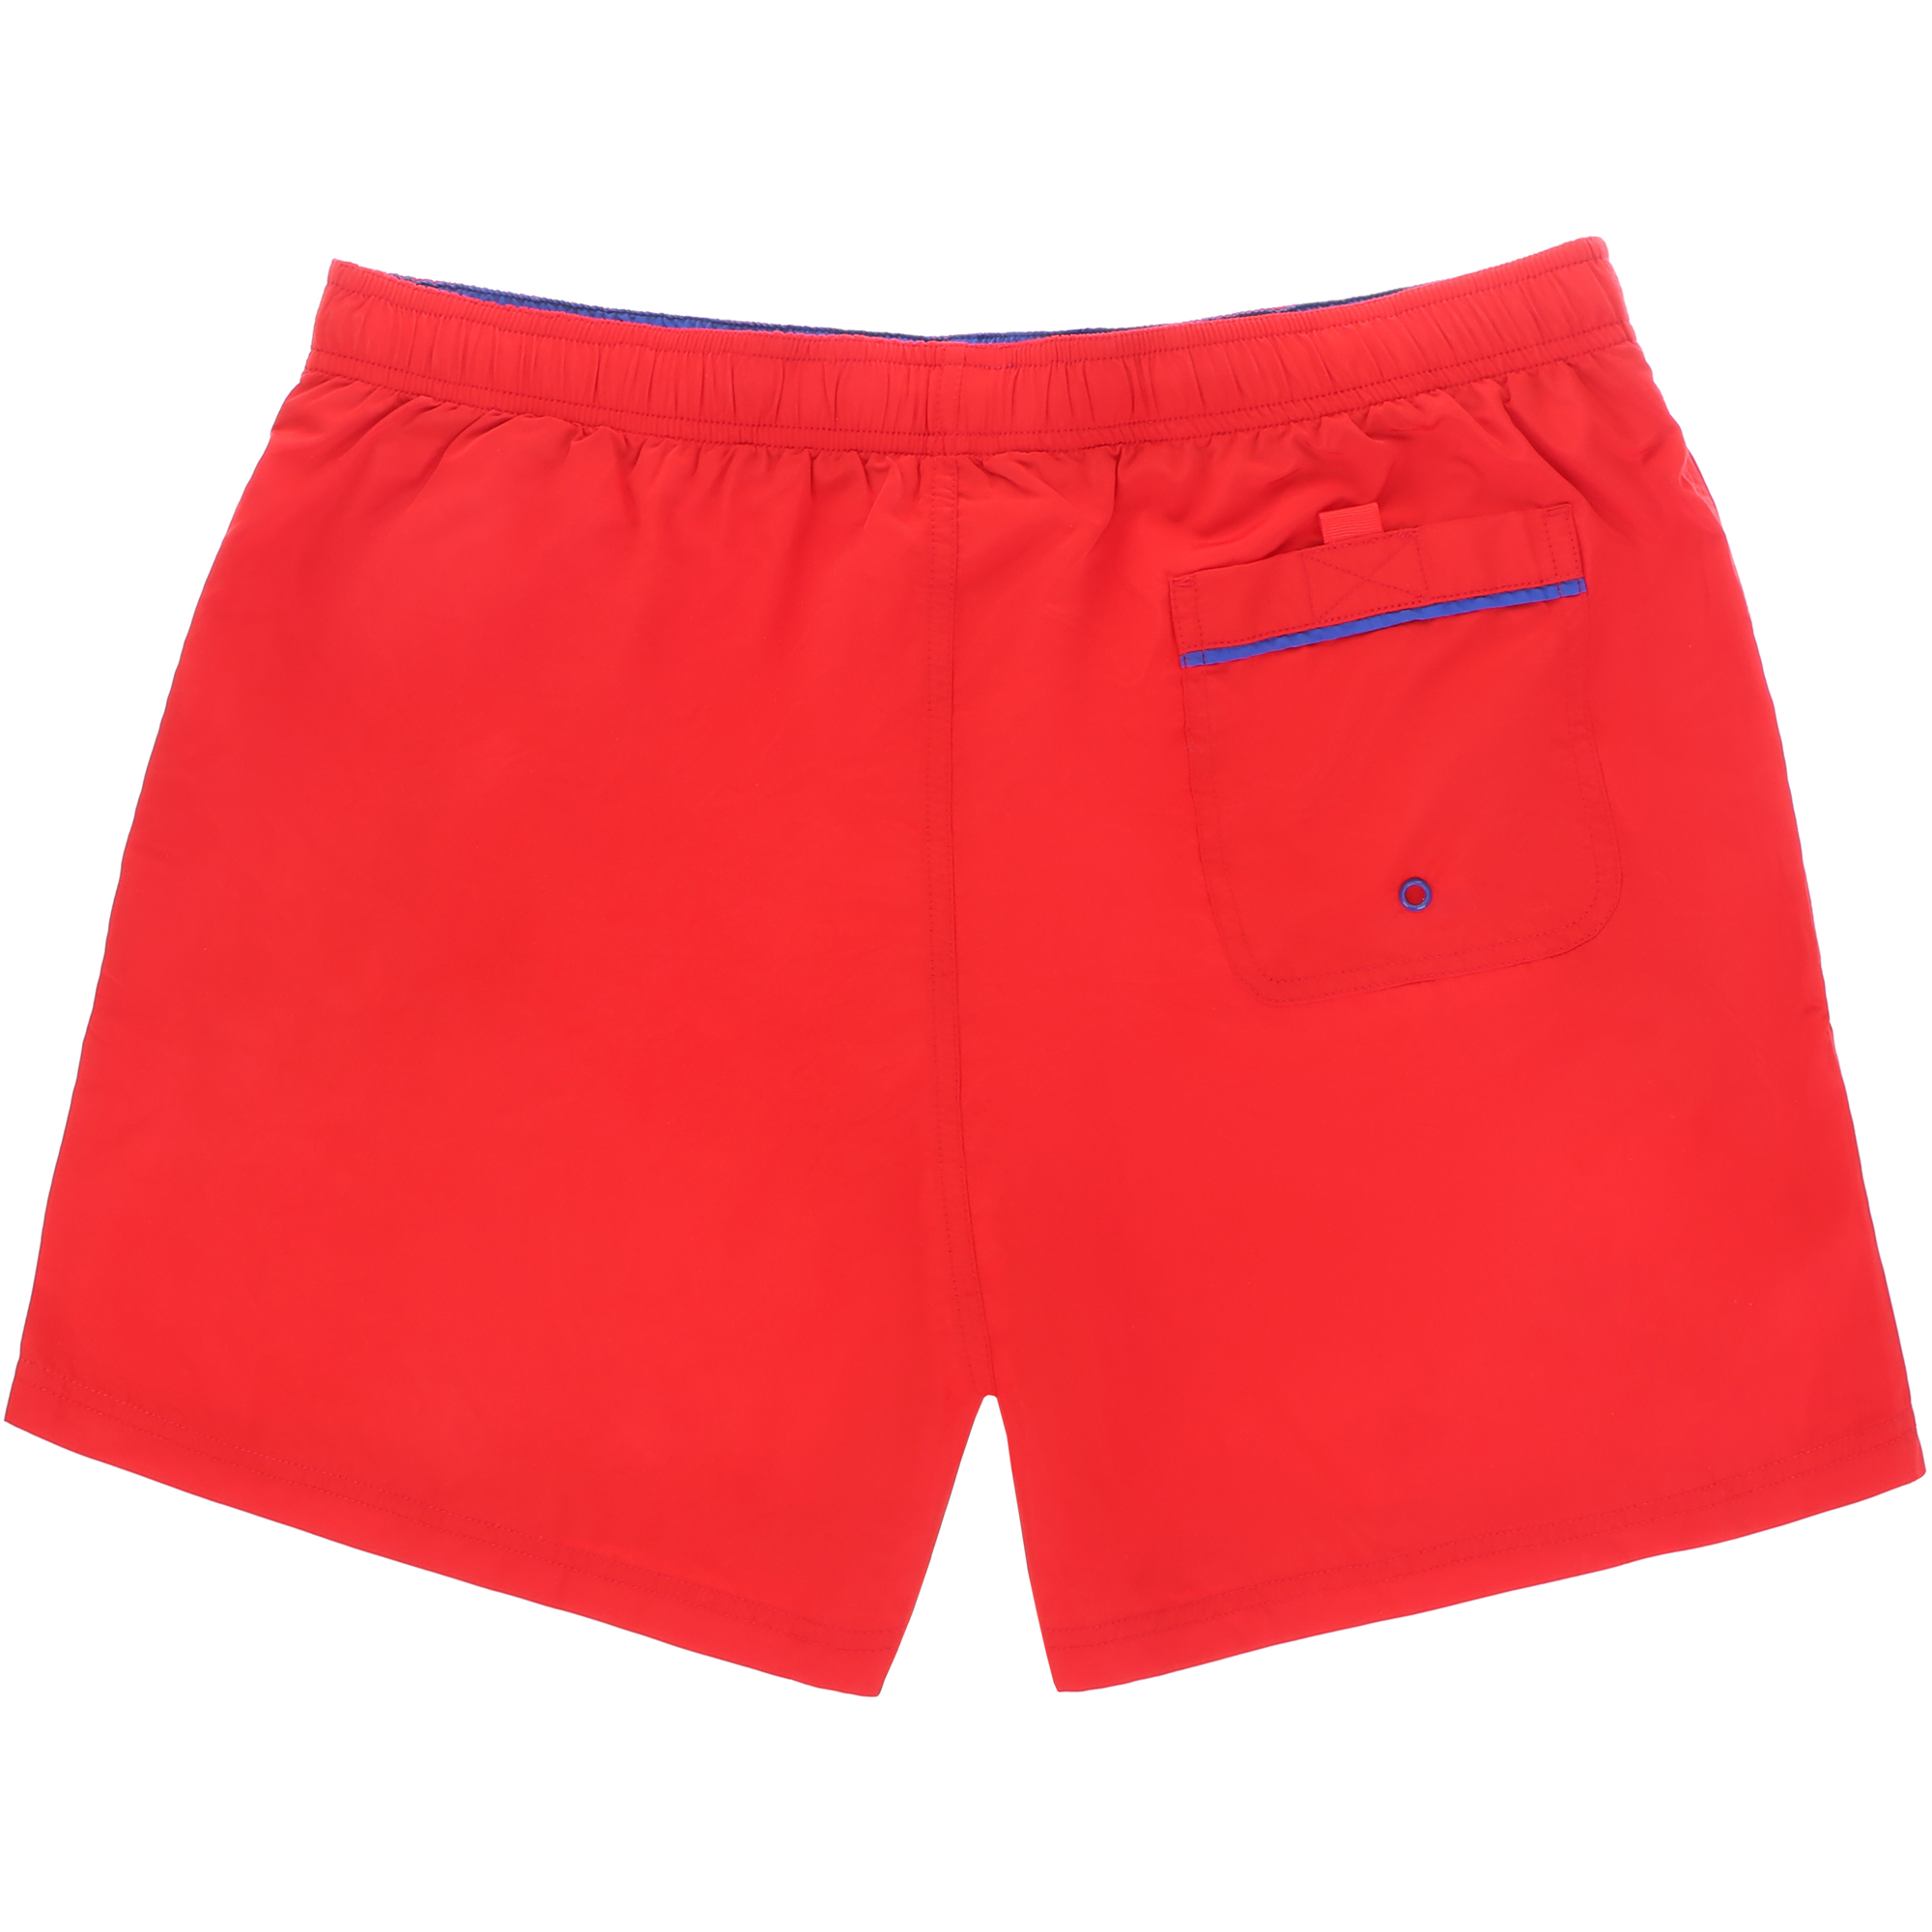 Мужские пляжные шорты Joyord красные, цвет красный, размер L - фото 2